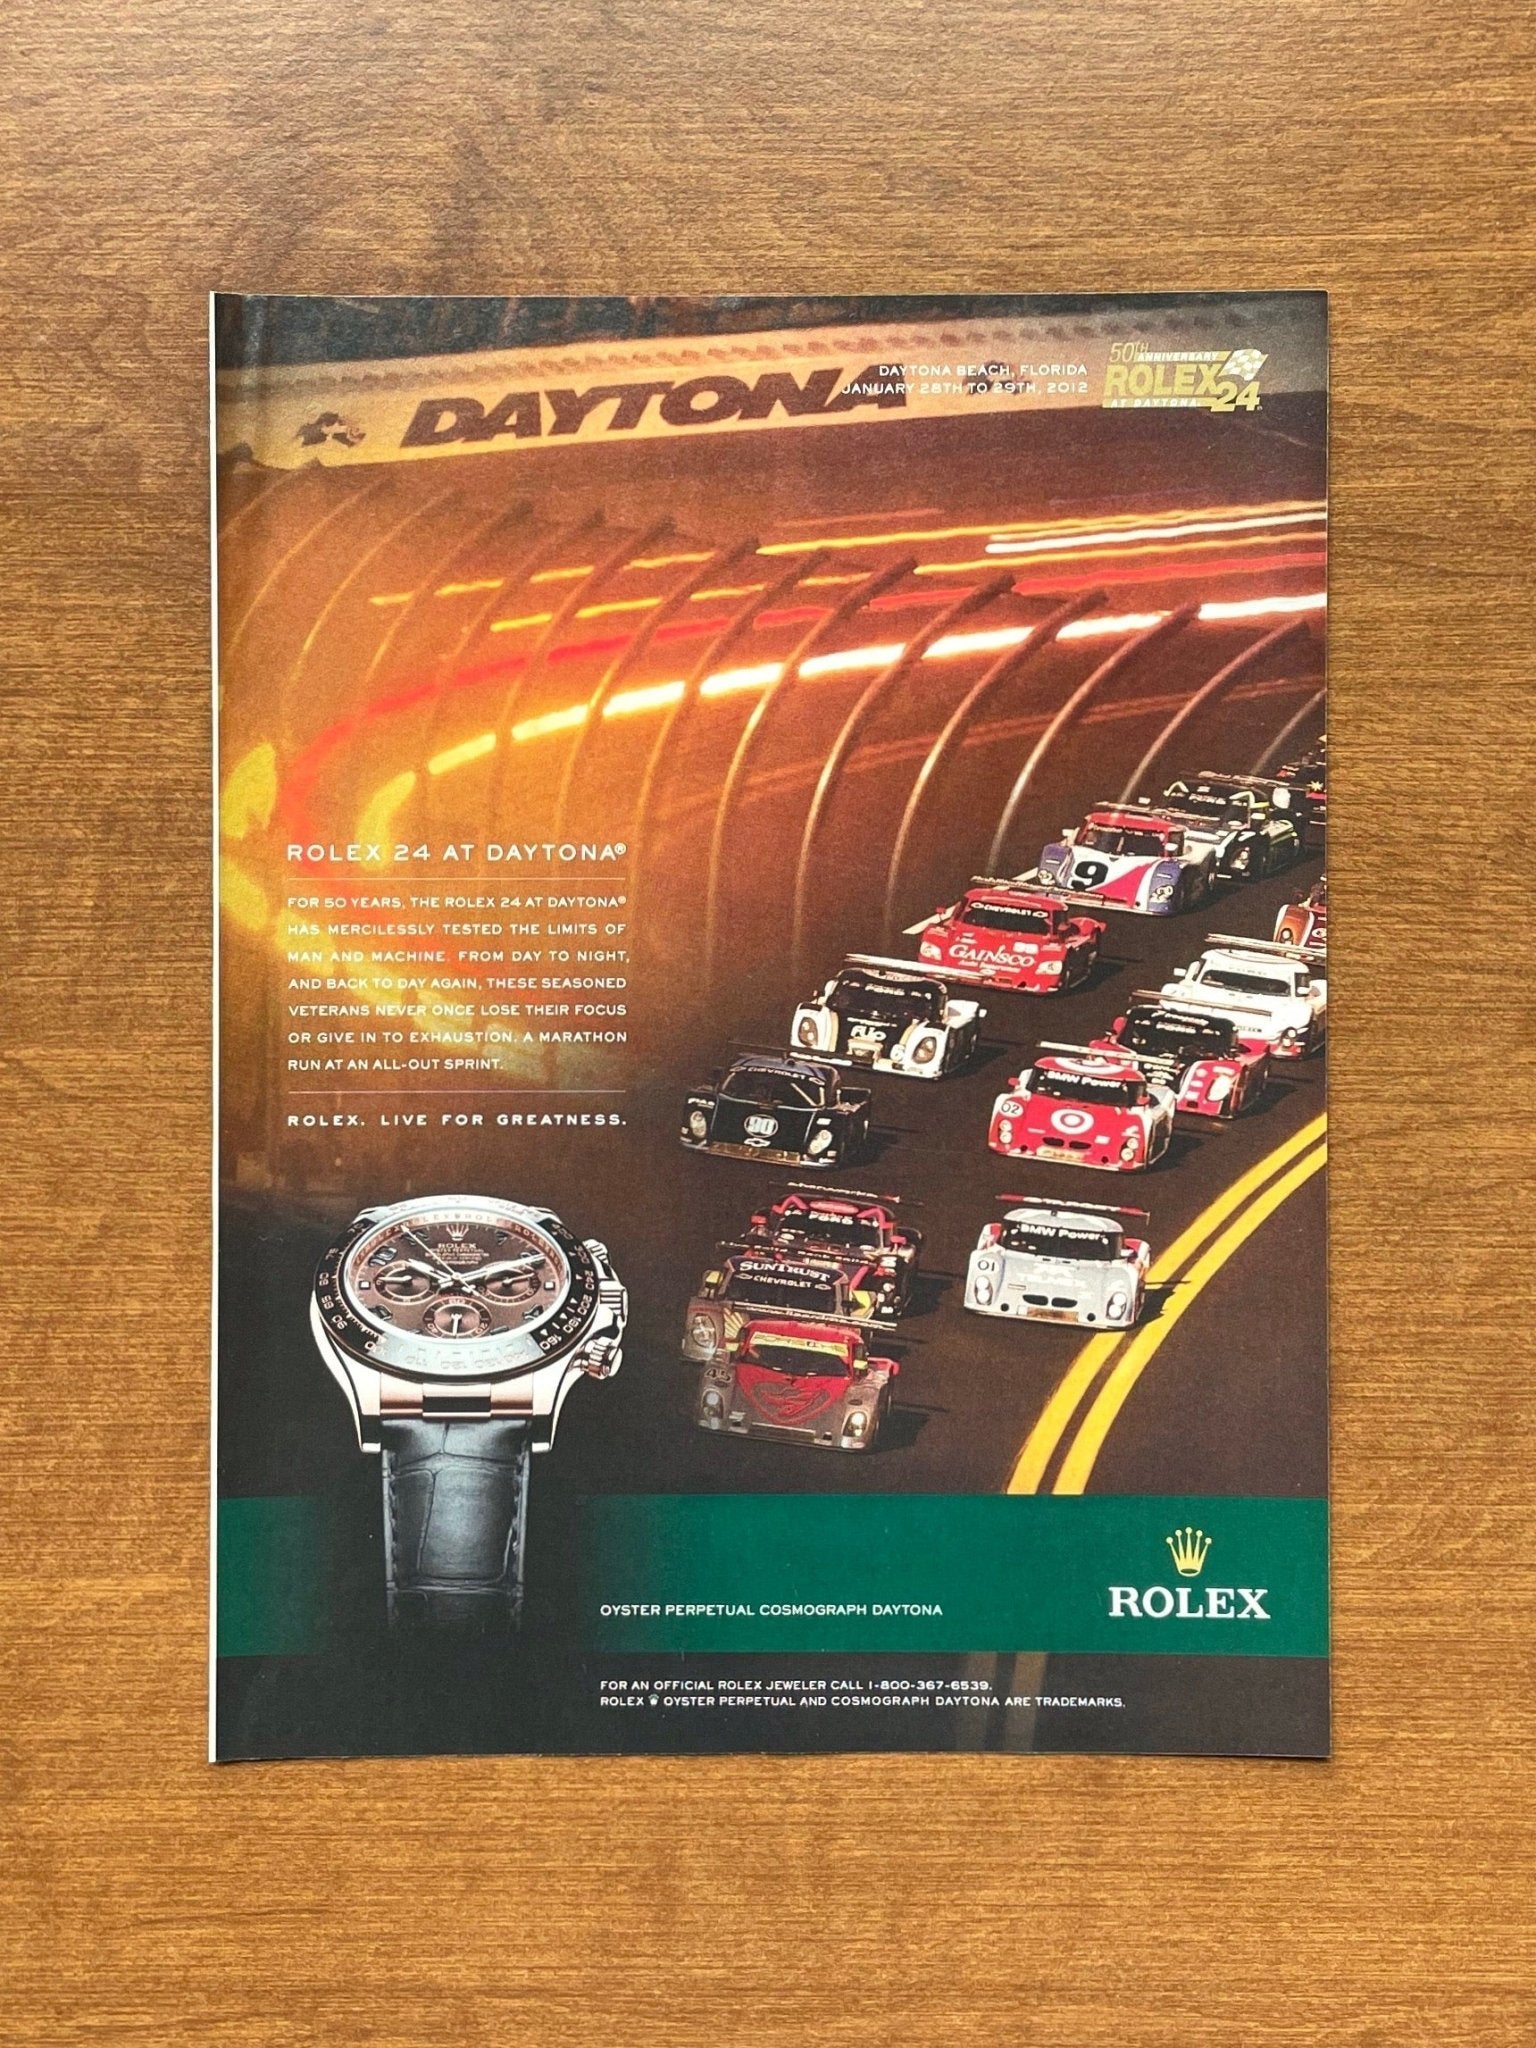 2012 Rolex Daytona Ref. 116515 "Rolex 24 at Daytona" Advertisement